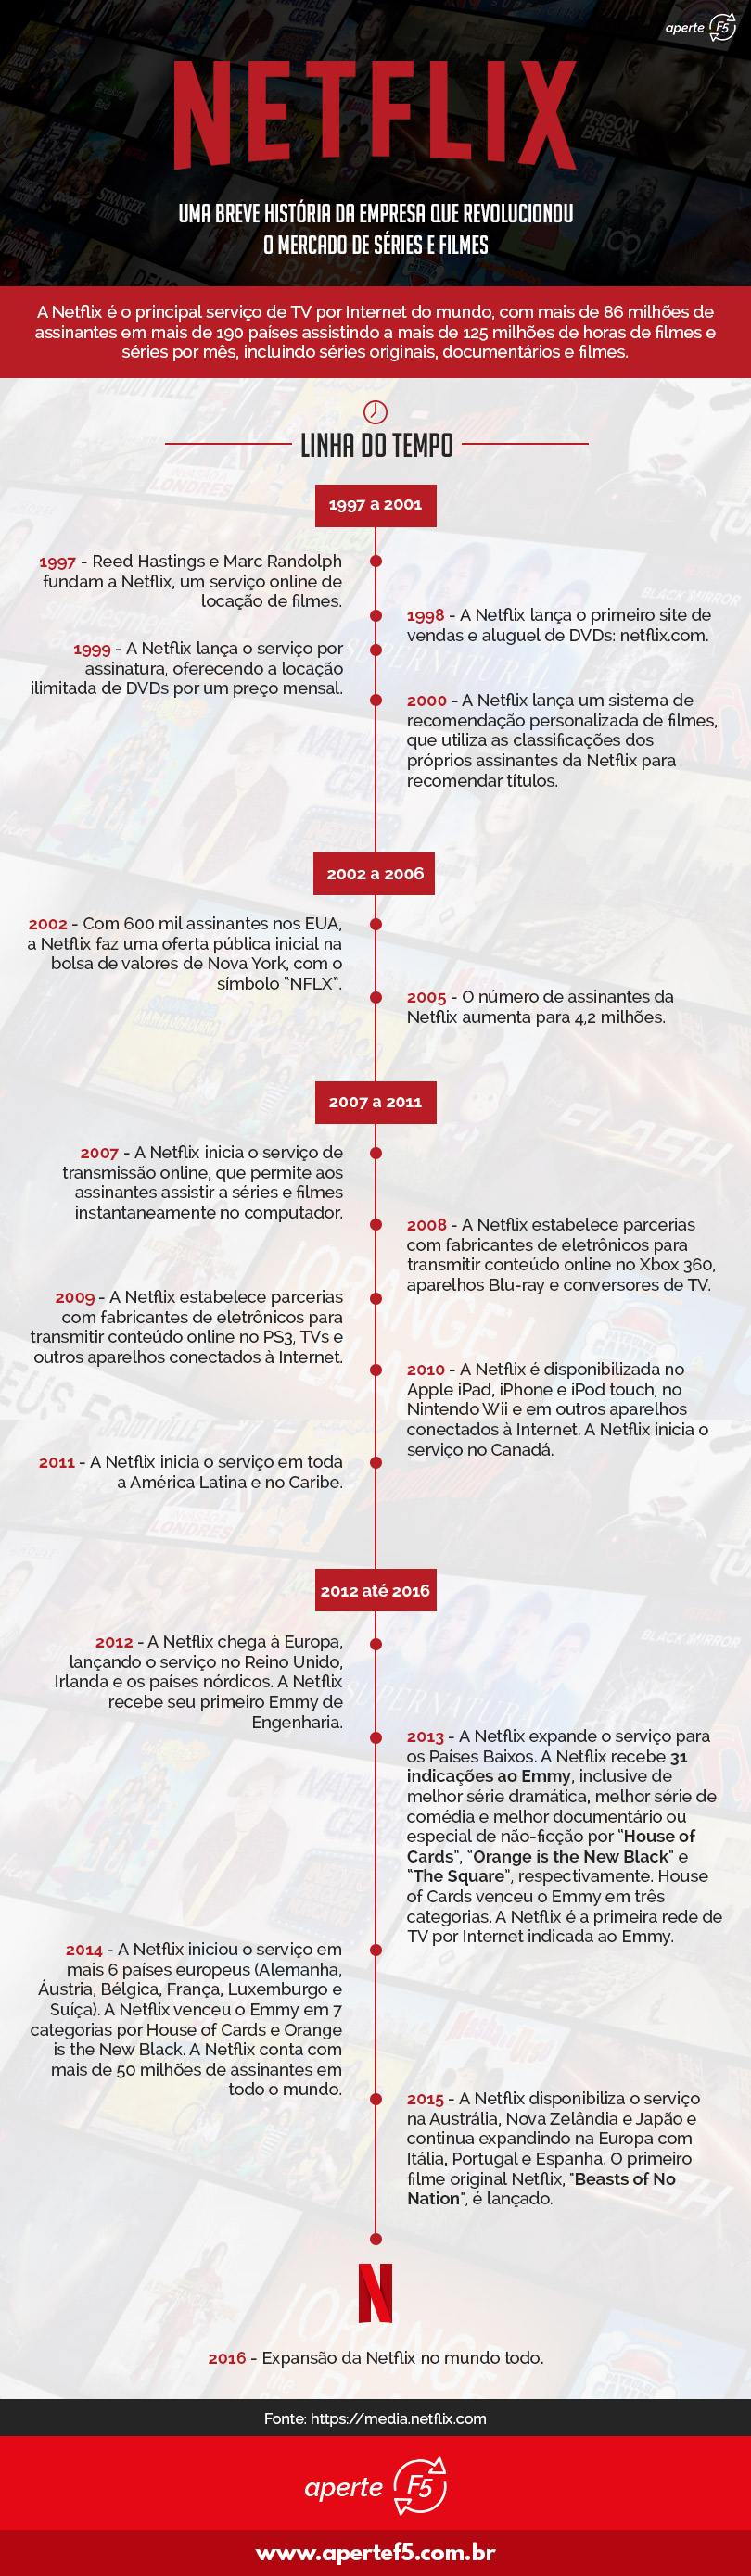 Infográfico Netflix: História da empresa desde 1997 até os dias atuais